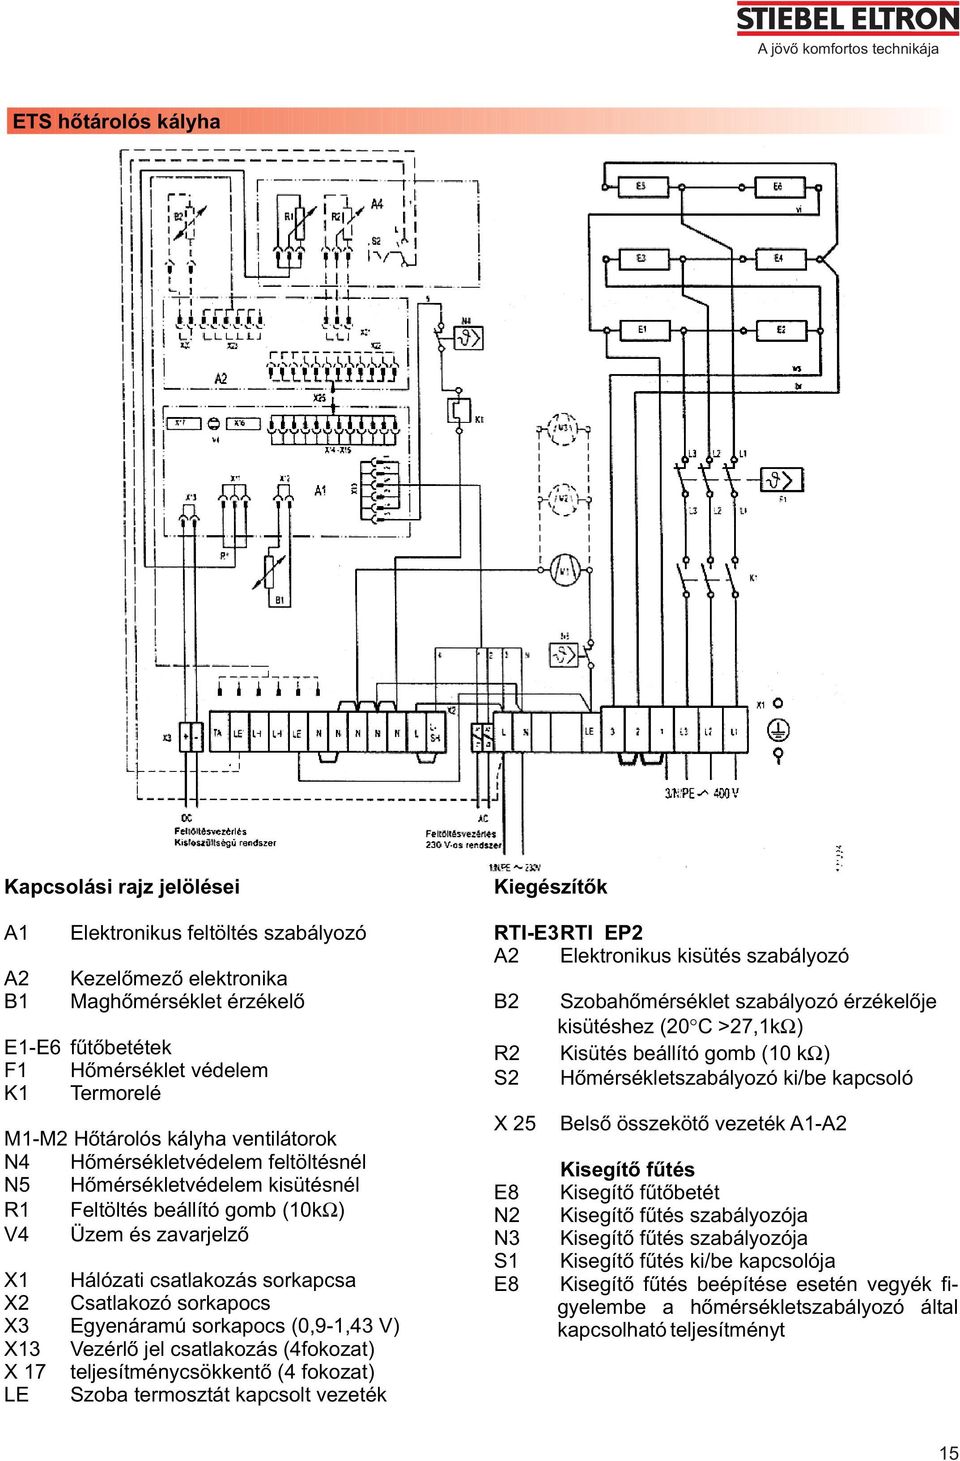 csatlakozás sorkapcsa X2 Csatlakozó sorkapocs X3 Egyenáramú sorkapocs (0,9-1,43 V) X13 Vezérlõ jel csatlakozás (4fokozat) X 17 teljesítménycsökkentõ (4 fokozat) LE Szoba termosztát kapcsolt vezeték